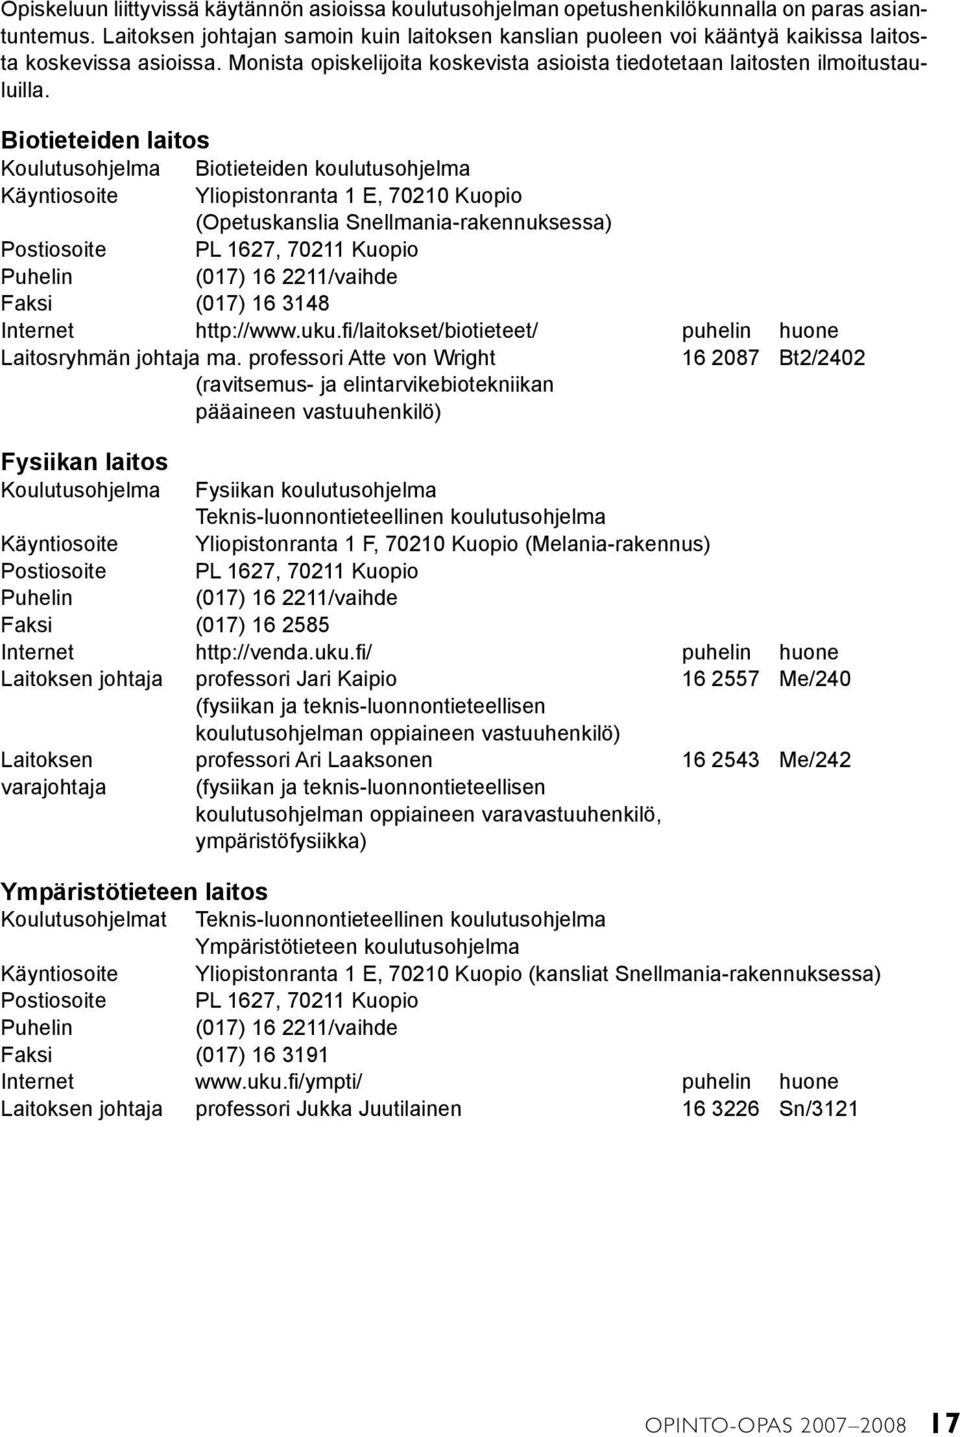 Biotieteiden laitos Koulutusohjelma Biotieteiden koulutusohjelma Käyntiosoite Yliopistonranta 1 E, 70210 Kuopio (Opetuskanslia Snellmania-rakennuksessa) Postiosoite PL 1627, 70211 Kuopio Puhelin